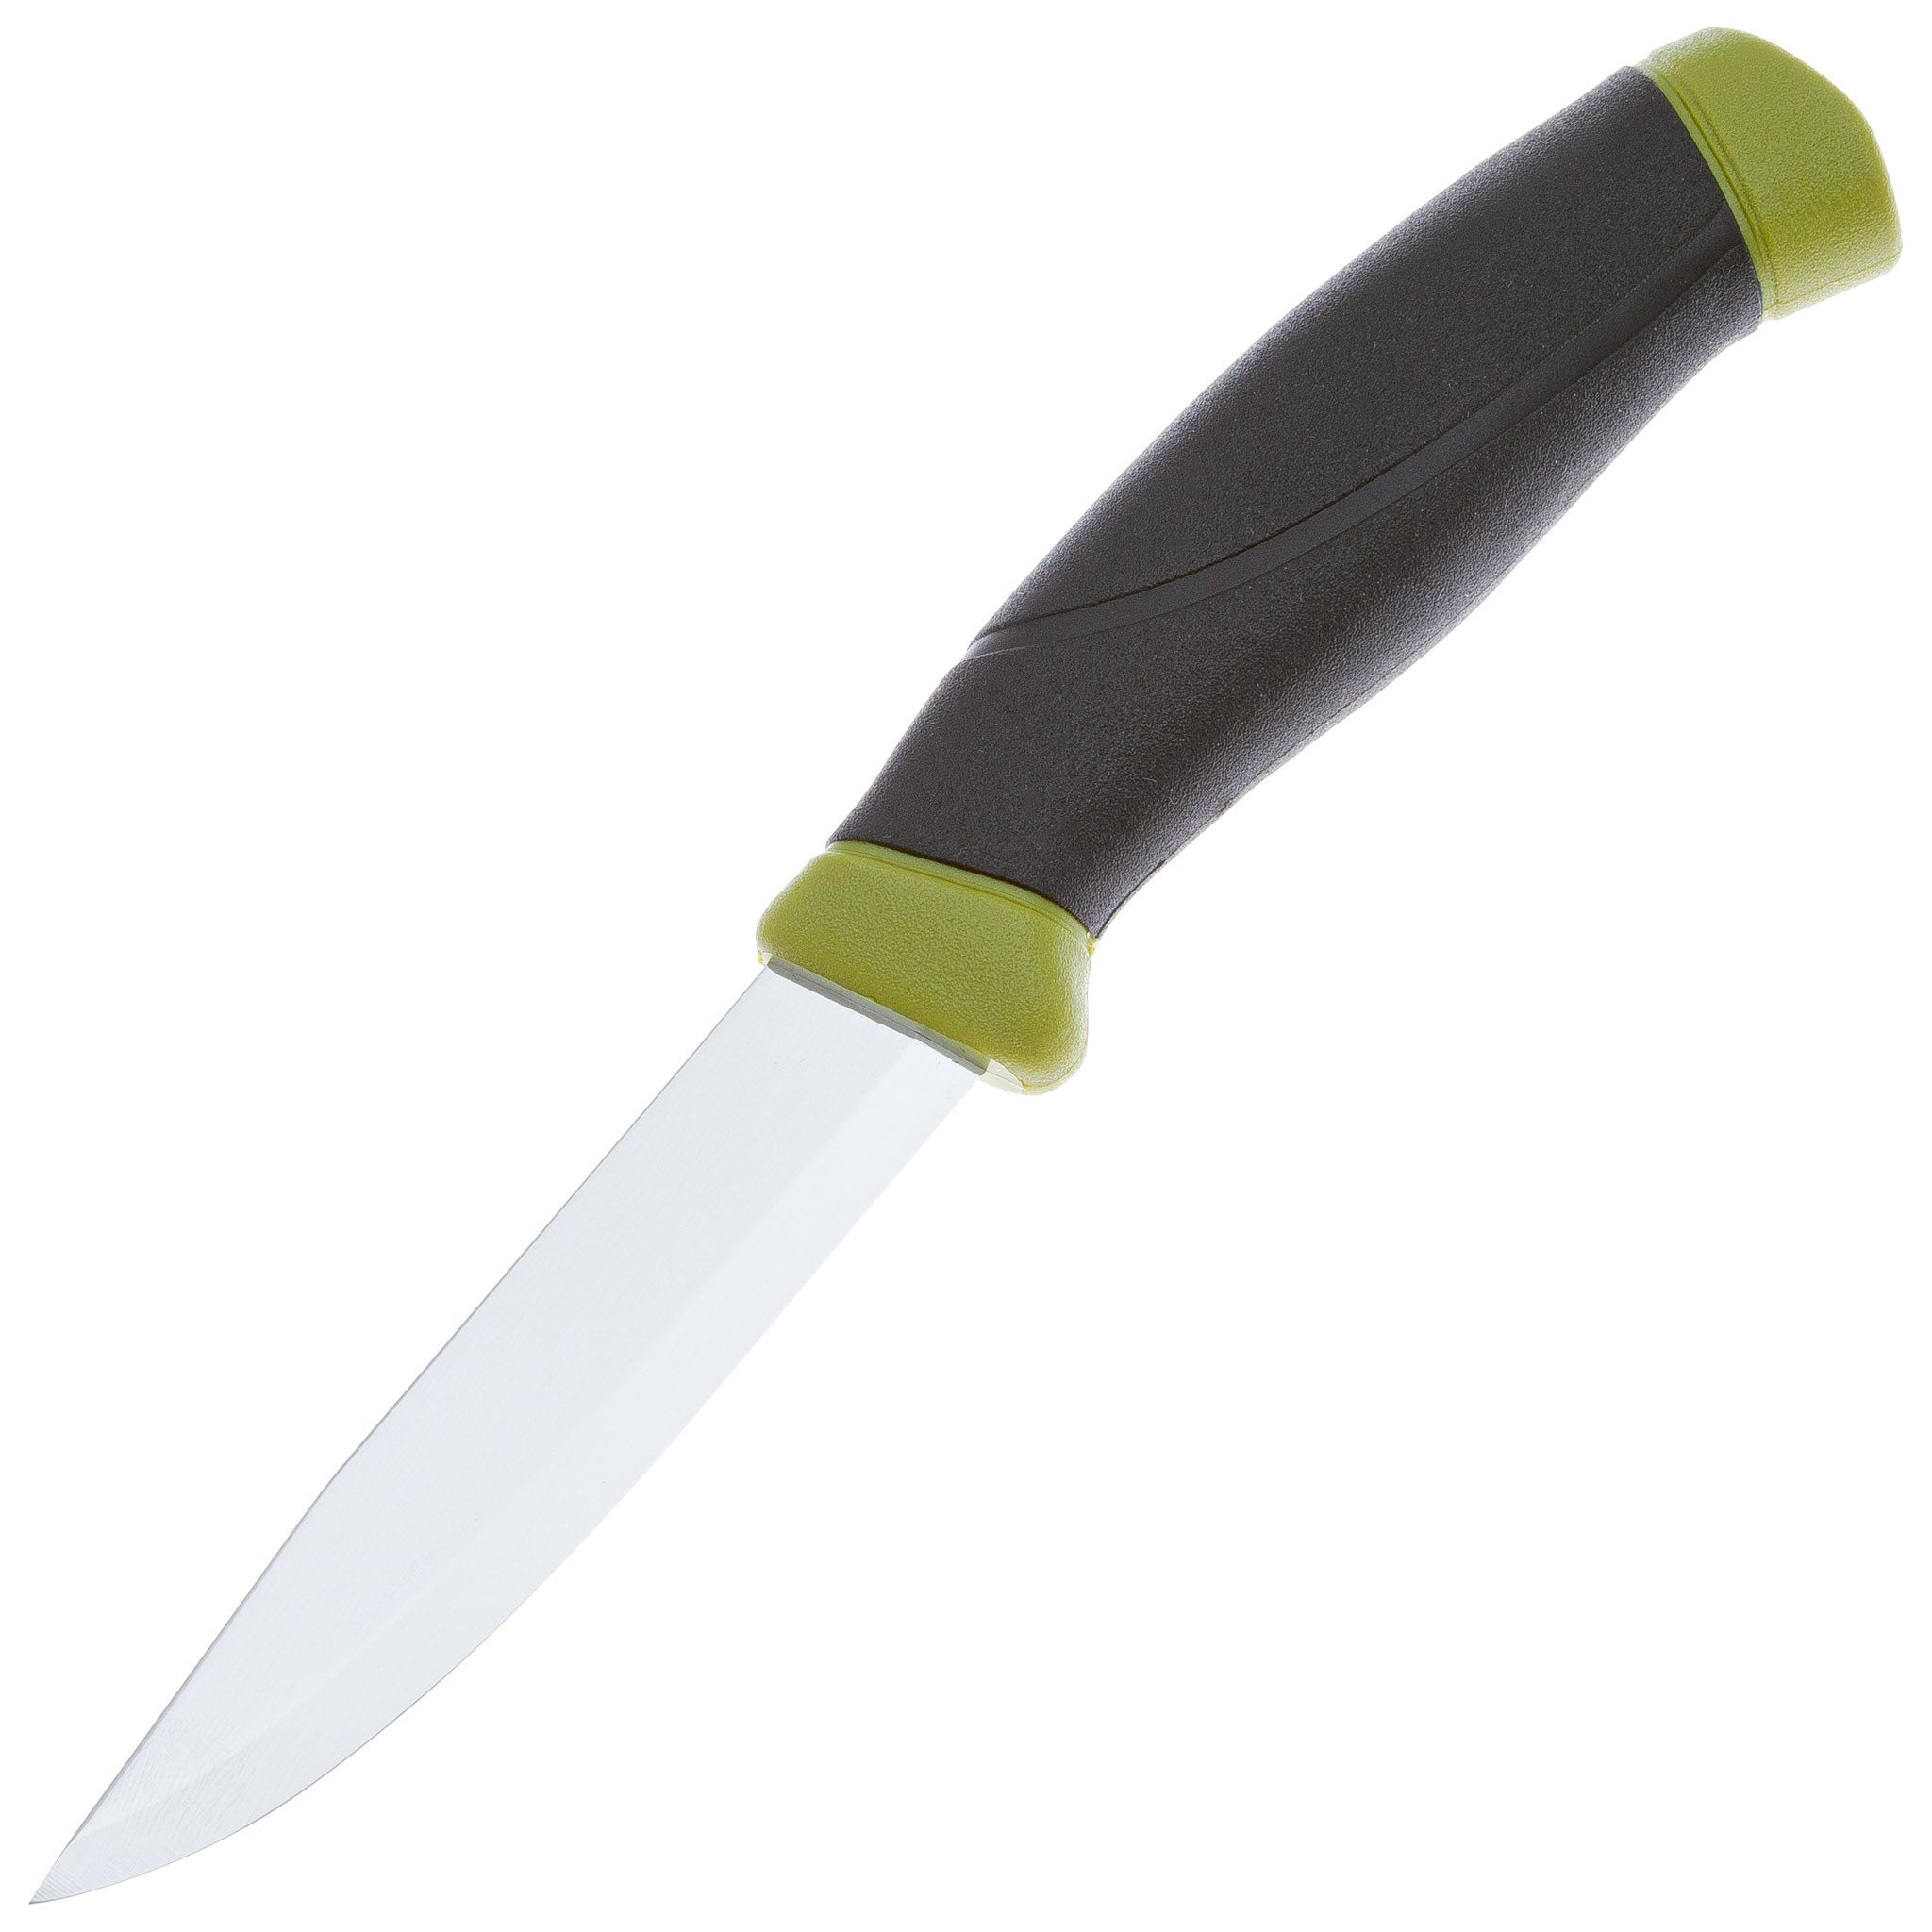 Нож с фиксированным лезвием Morakniv Companion, сталь Sandvik 12C27, рукоять резина, olive green нож morakniv eldris огниво зеленый